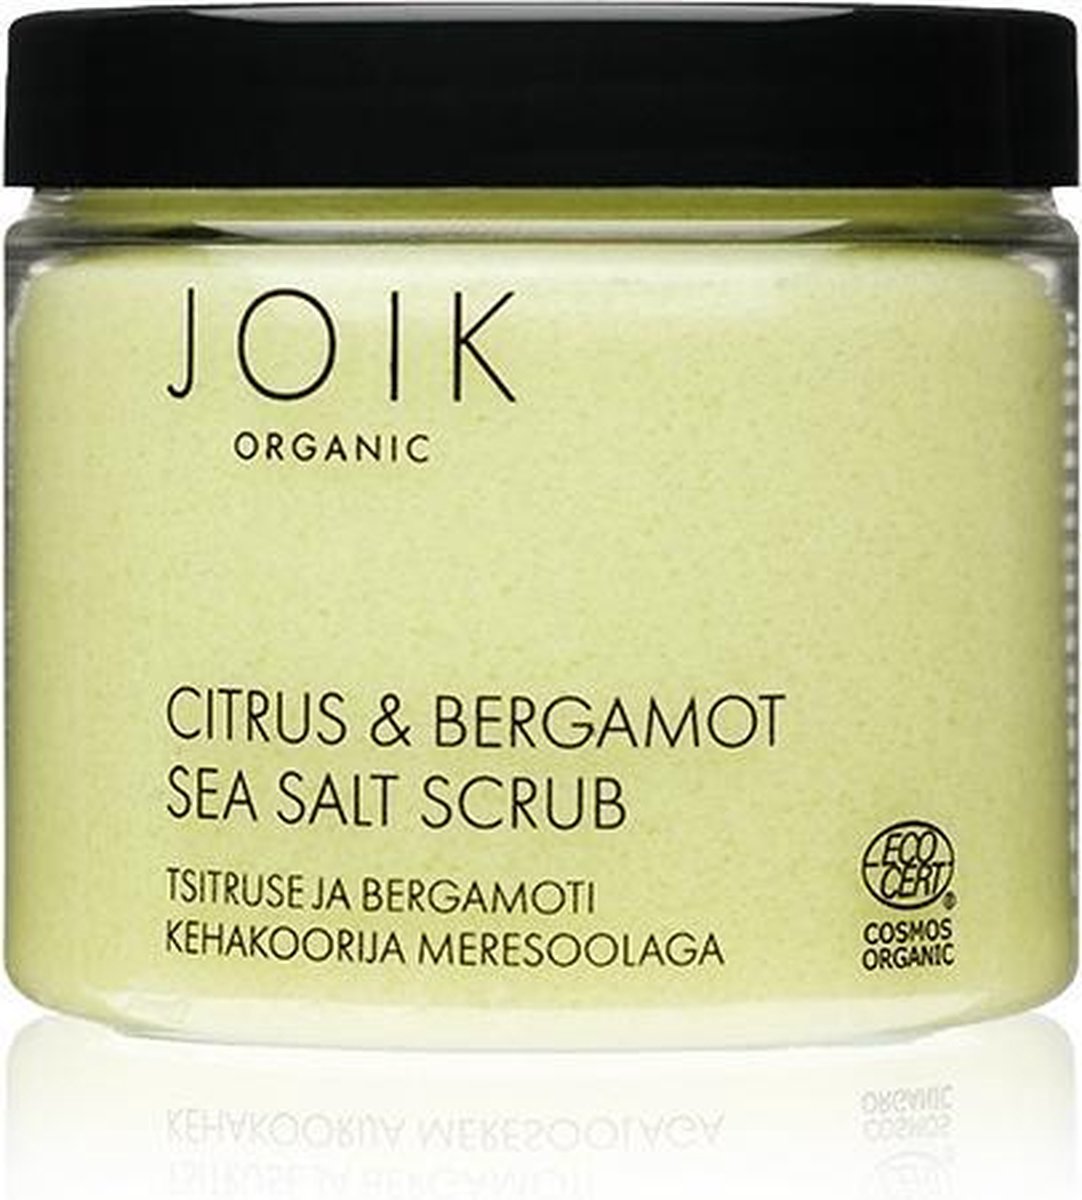 Joik Bodyscrub Unisex 240 Gram Vegan Citrus/bergamot Lime